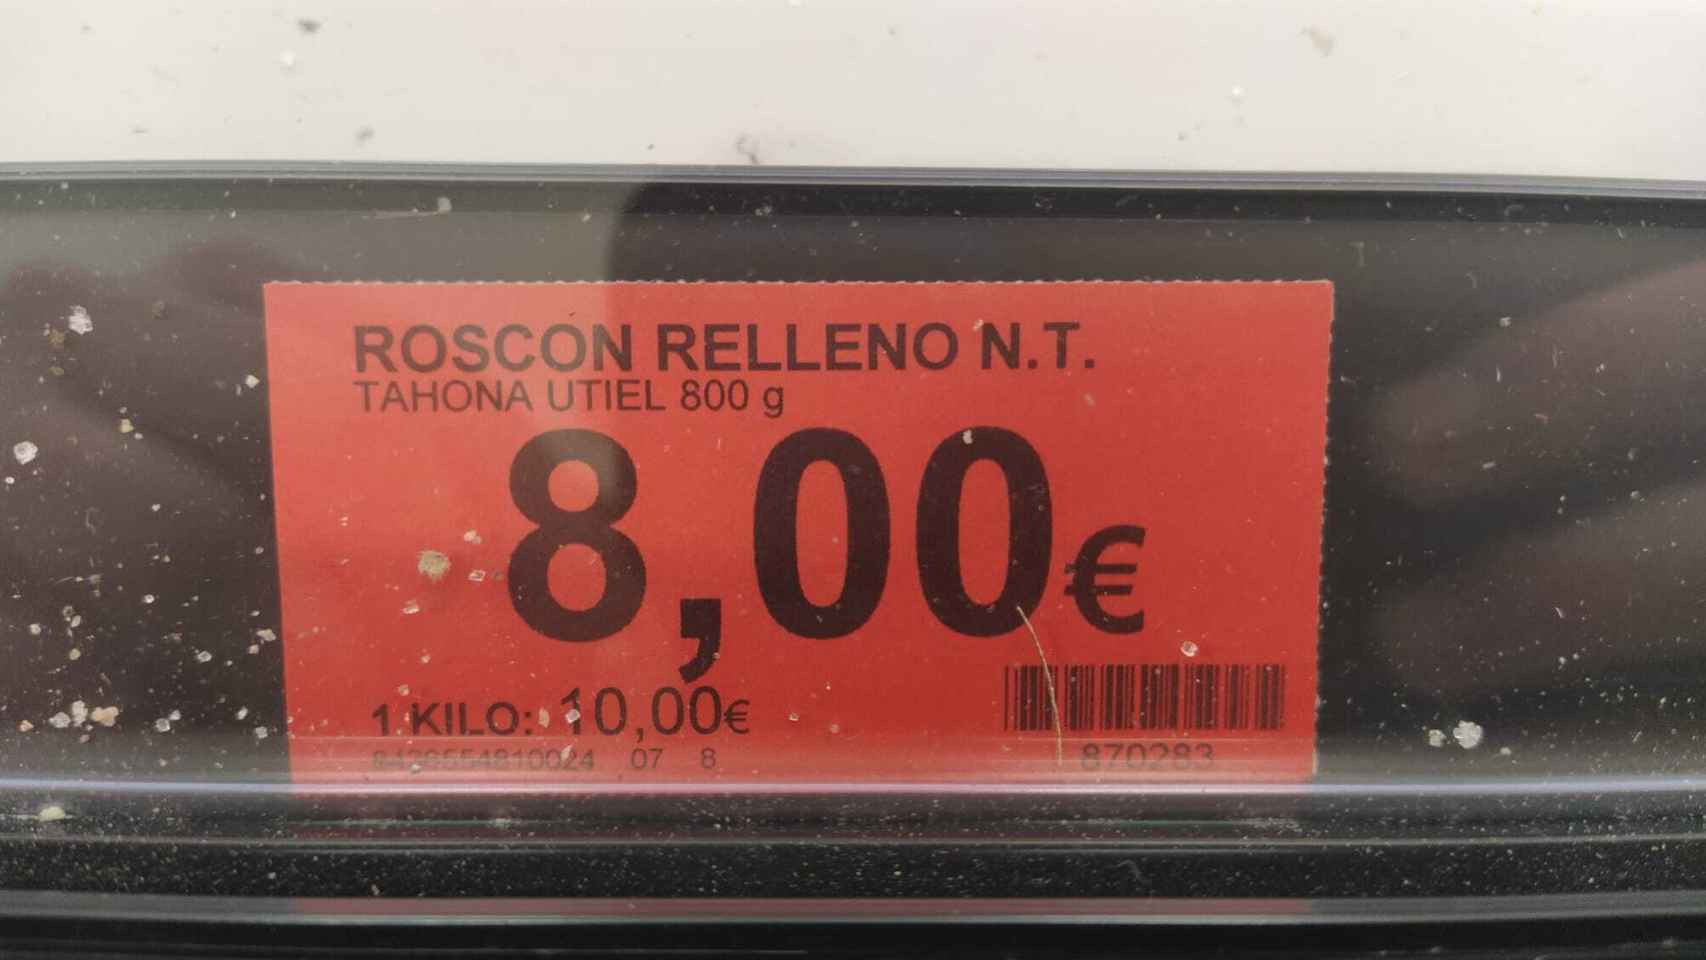 El precio de cada roscón de 800 gramos es de 8 euros.